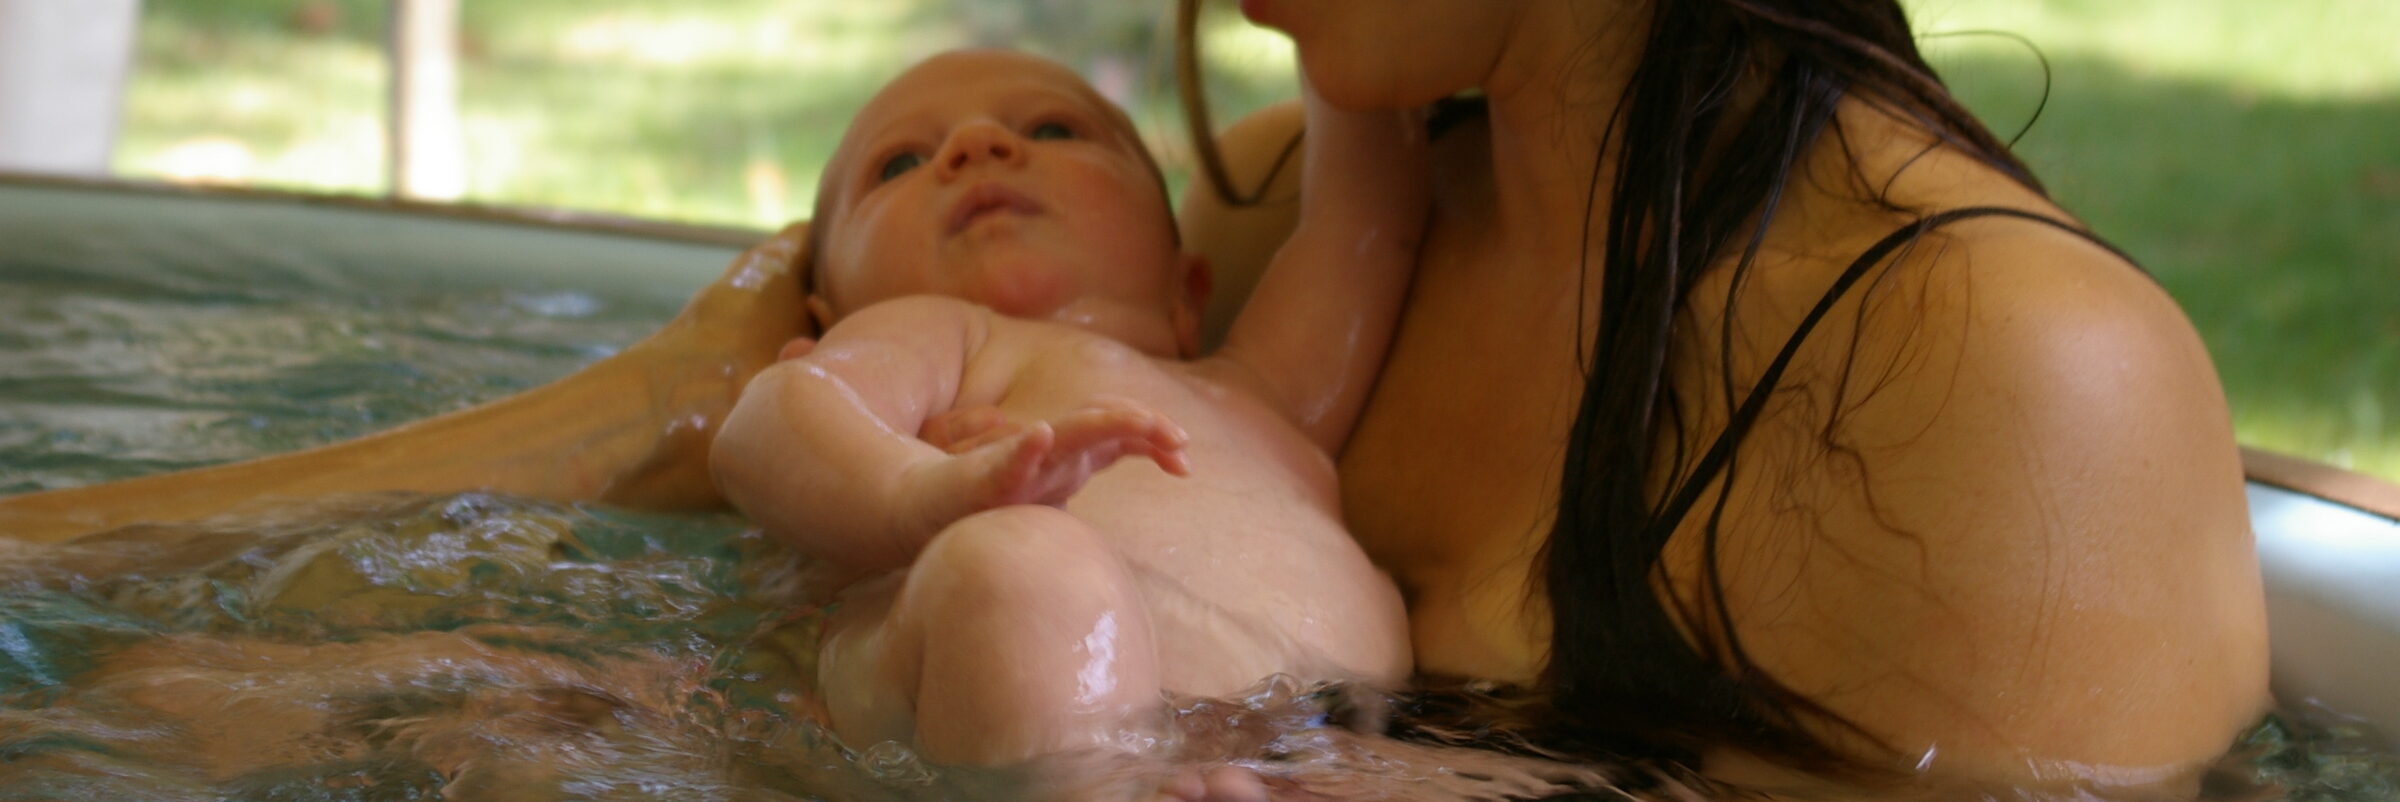 Foetoaquathérapie thérapie eau mère enfant "le jardin aquatique" "aix en provence" "ste victoire"